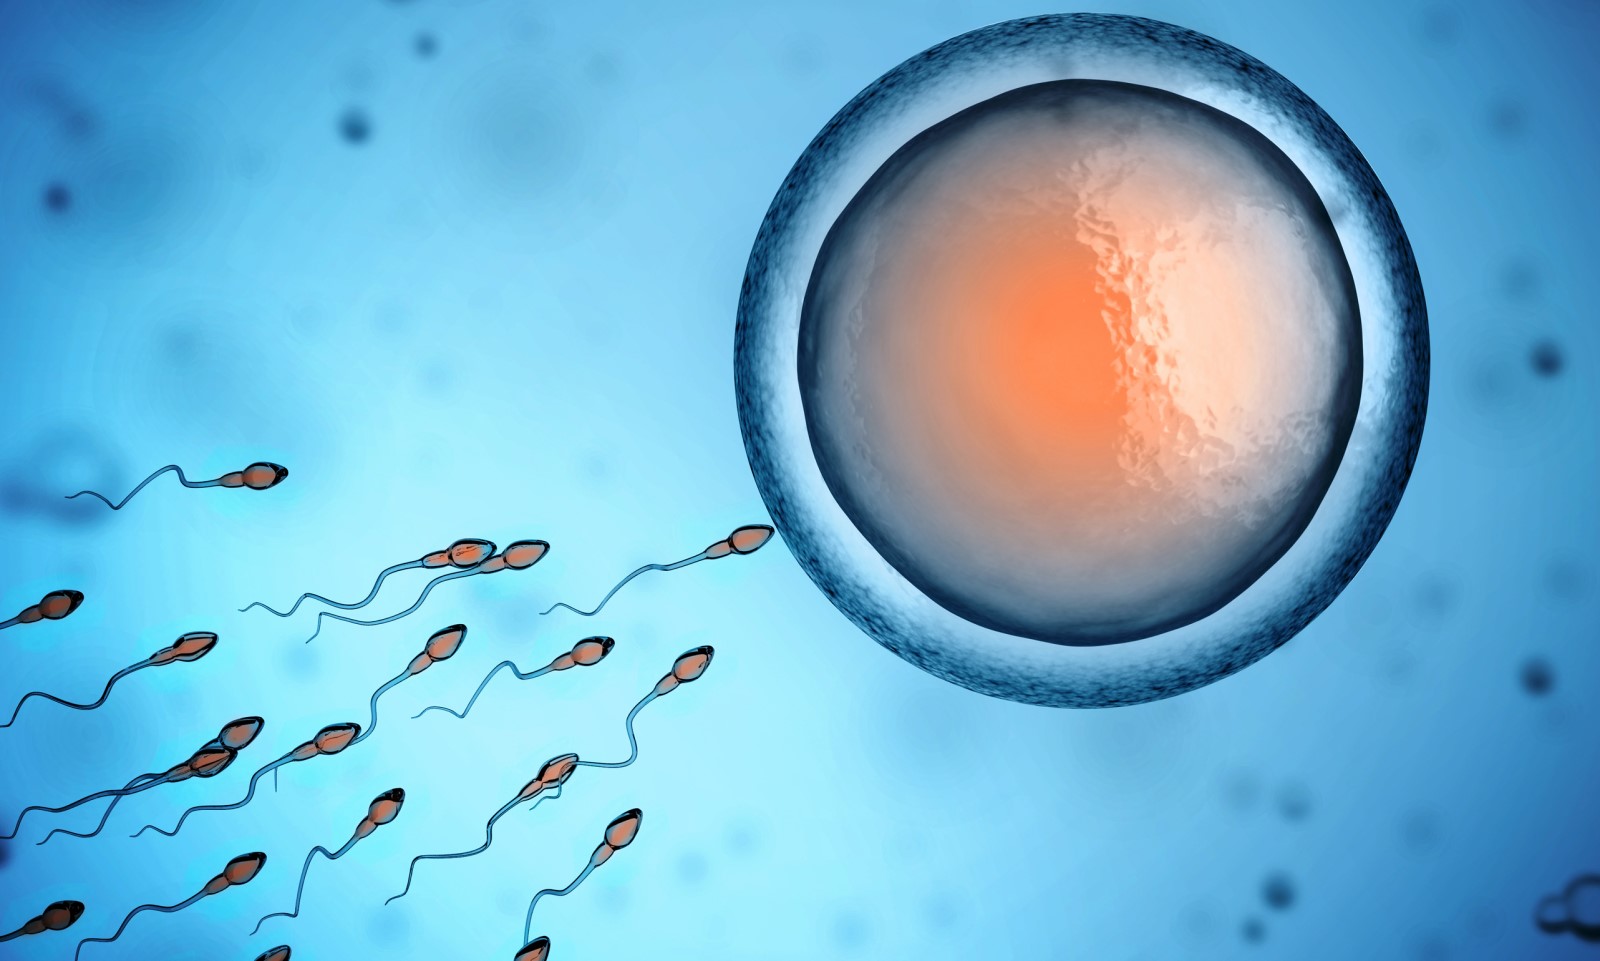 Ovulácia - spermie okolo vajíčka a možnosť oplodnenia - prieniku spermie do vajíčka - anatomické zobrazenie